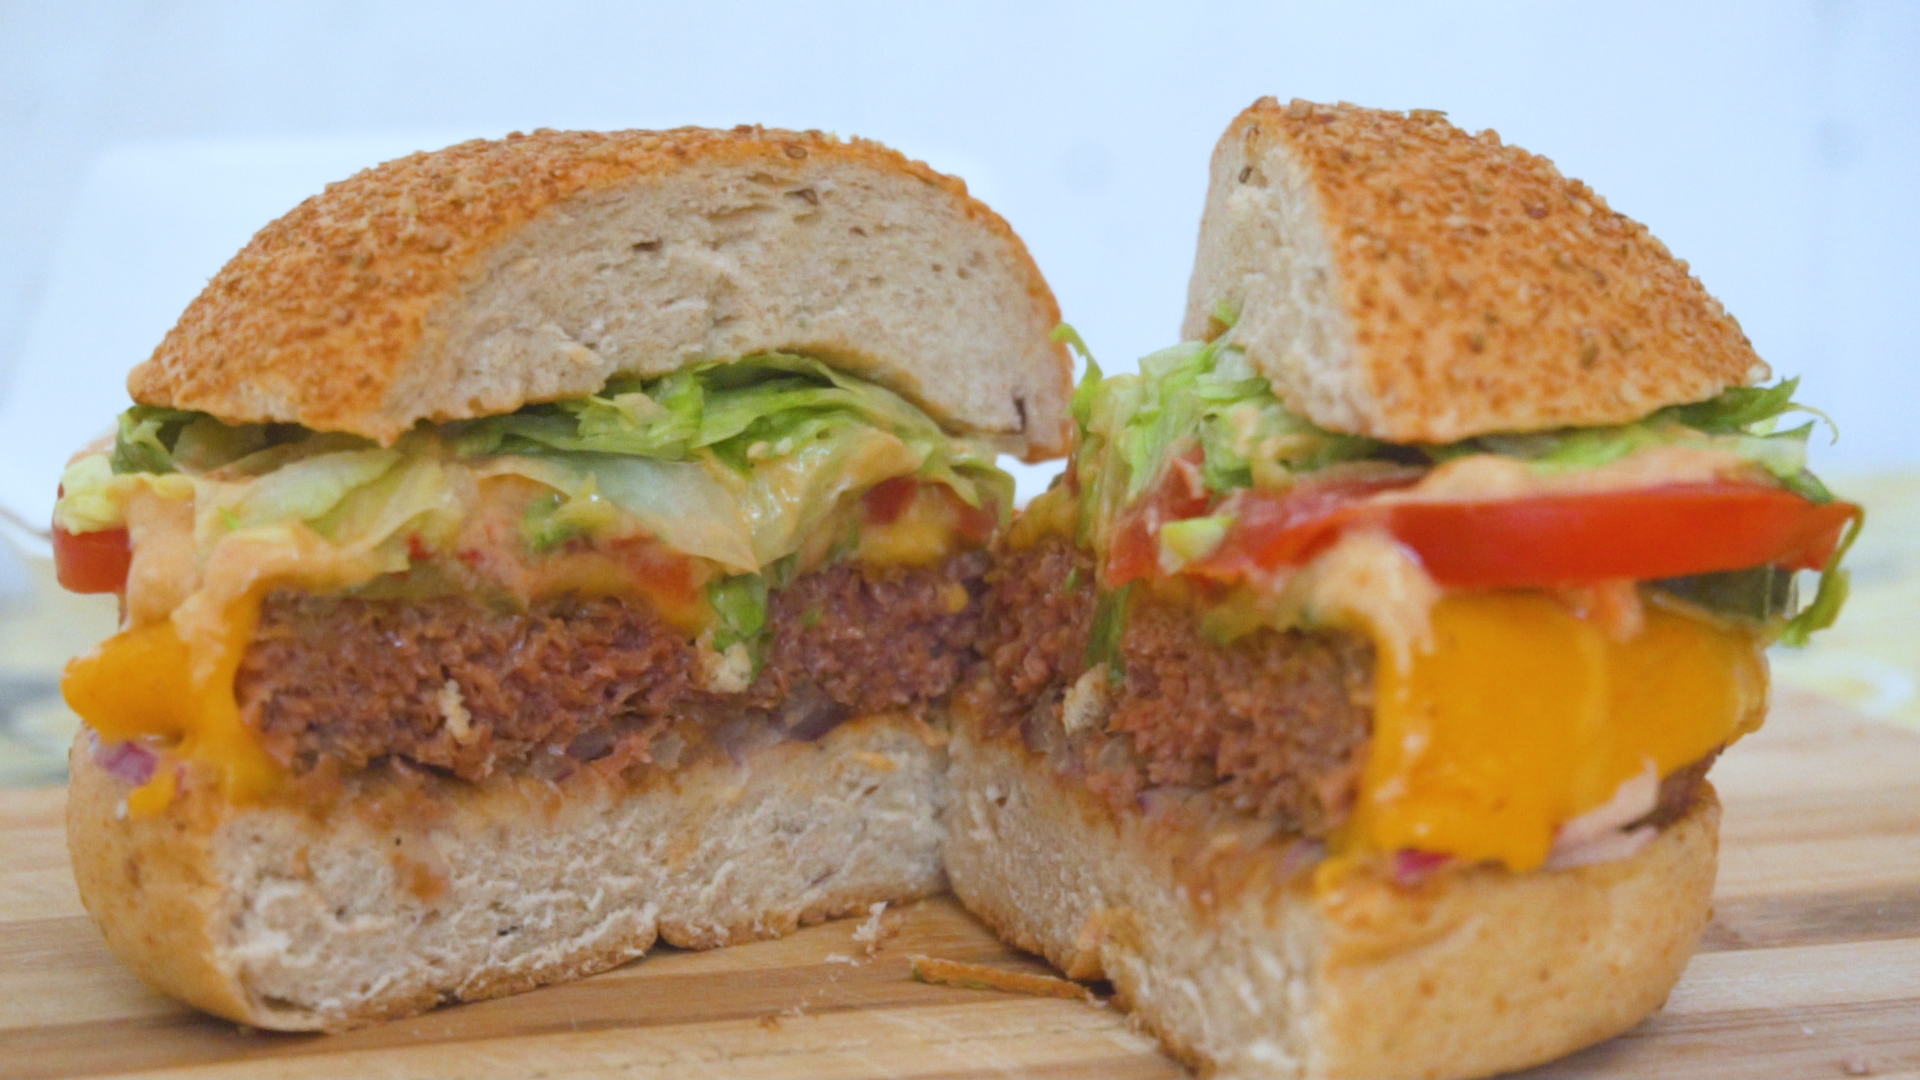 Már Budapesten is kapható a műhúsburger, de vajon jobb, mint amit a Mekiben vagy a Burger Kingben adnak?